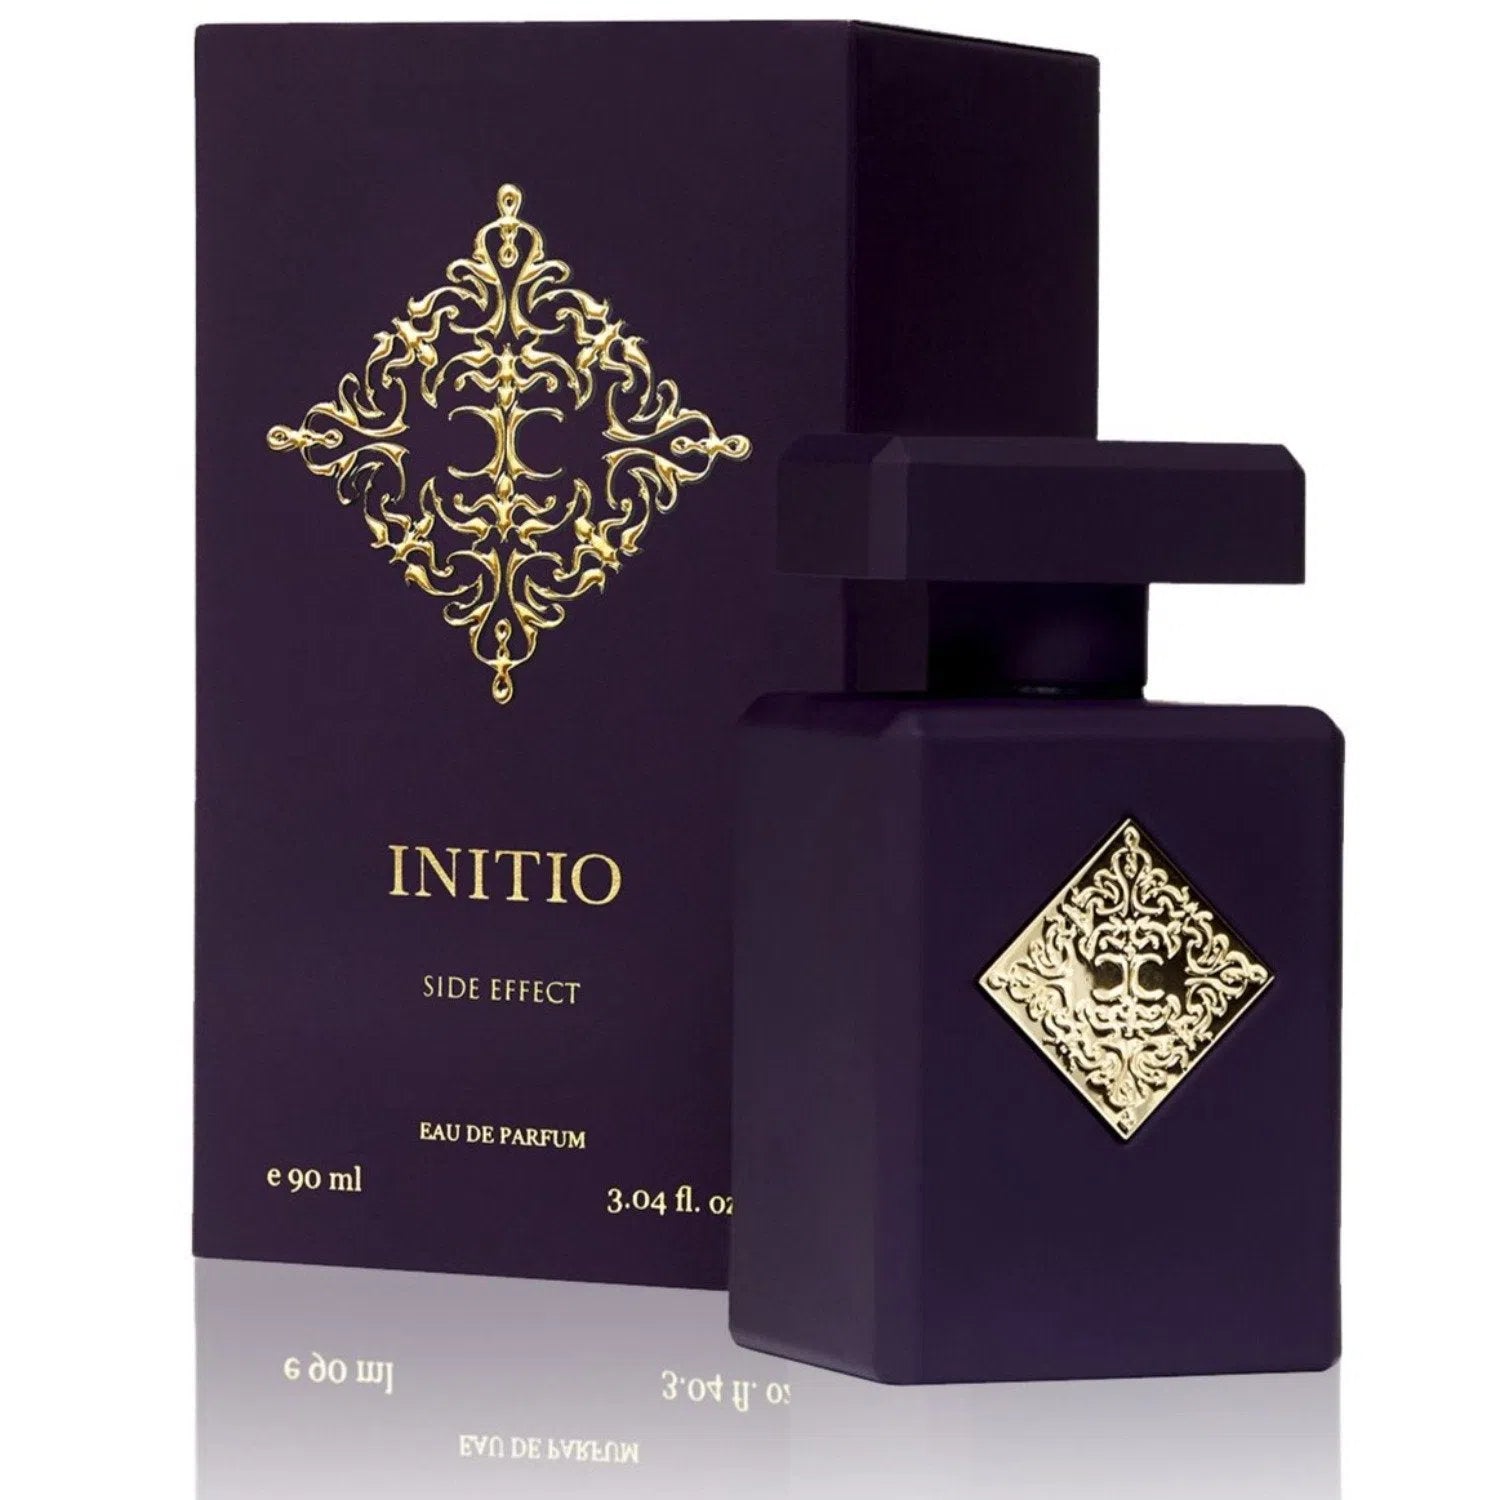 Perfume Initio Side Effect EDP (U) / 90 ml - 3700578520487- Prive Perfumes Honduras